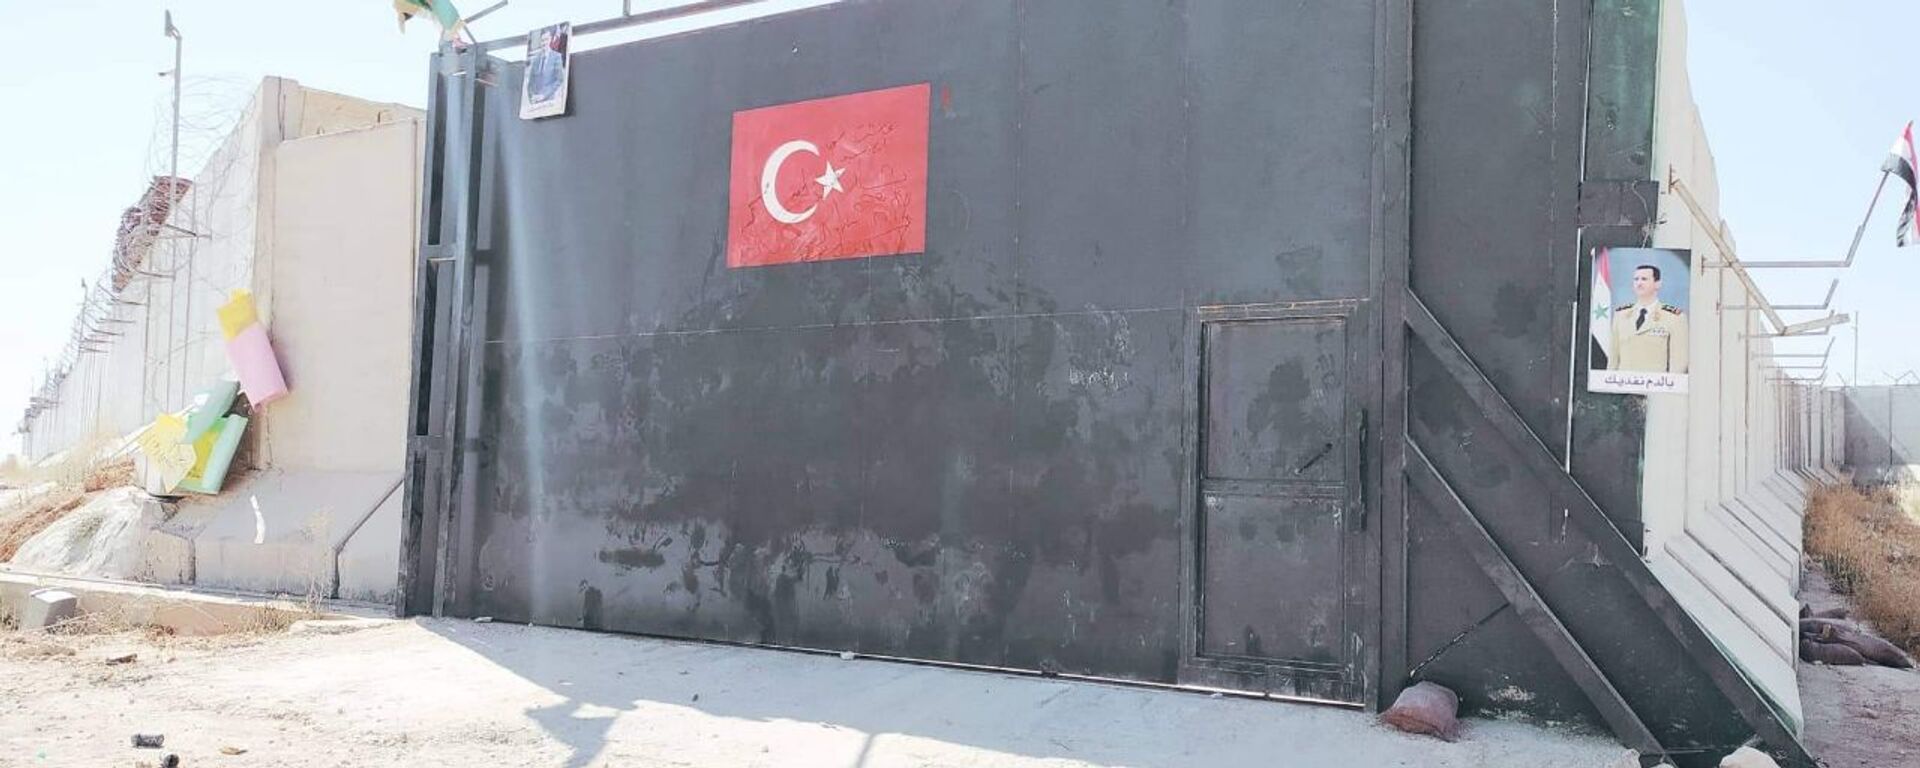 Portão de entrada de um dos postos de observação militar instalados pela Turquia em Idlib, na Síria - Sputnik Brasil, 1920, 08.06.2022